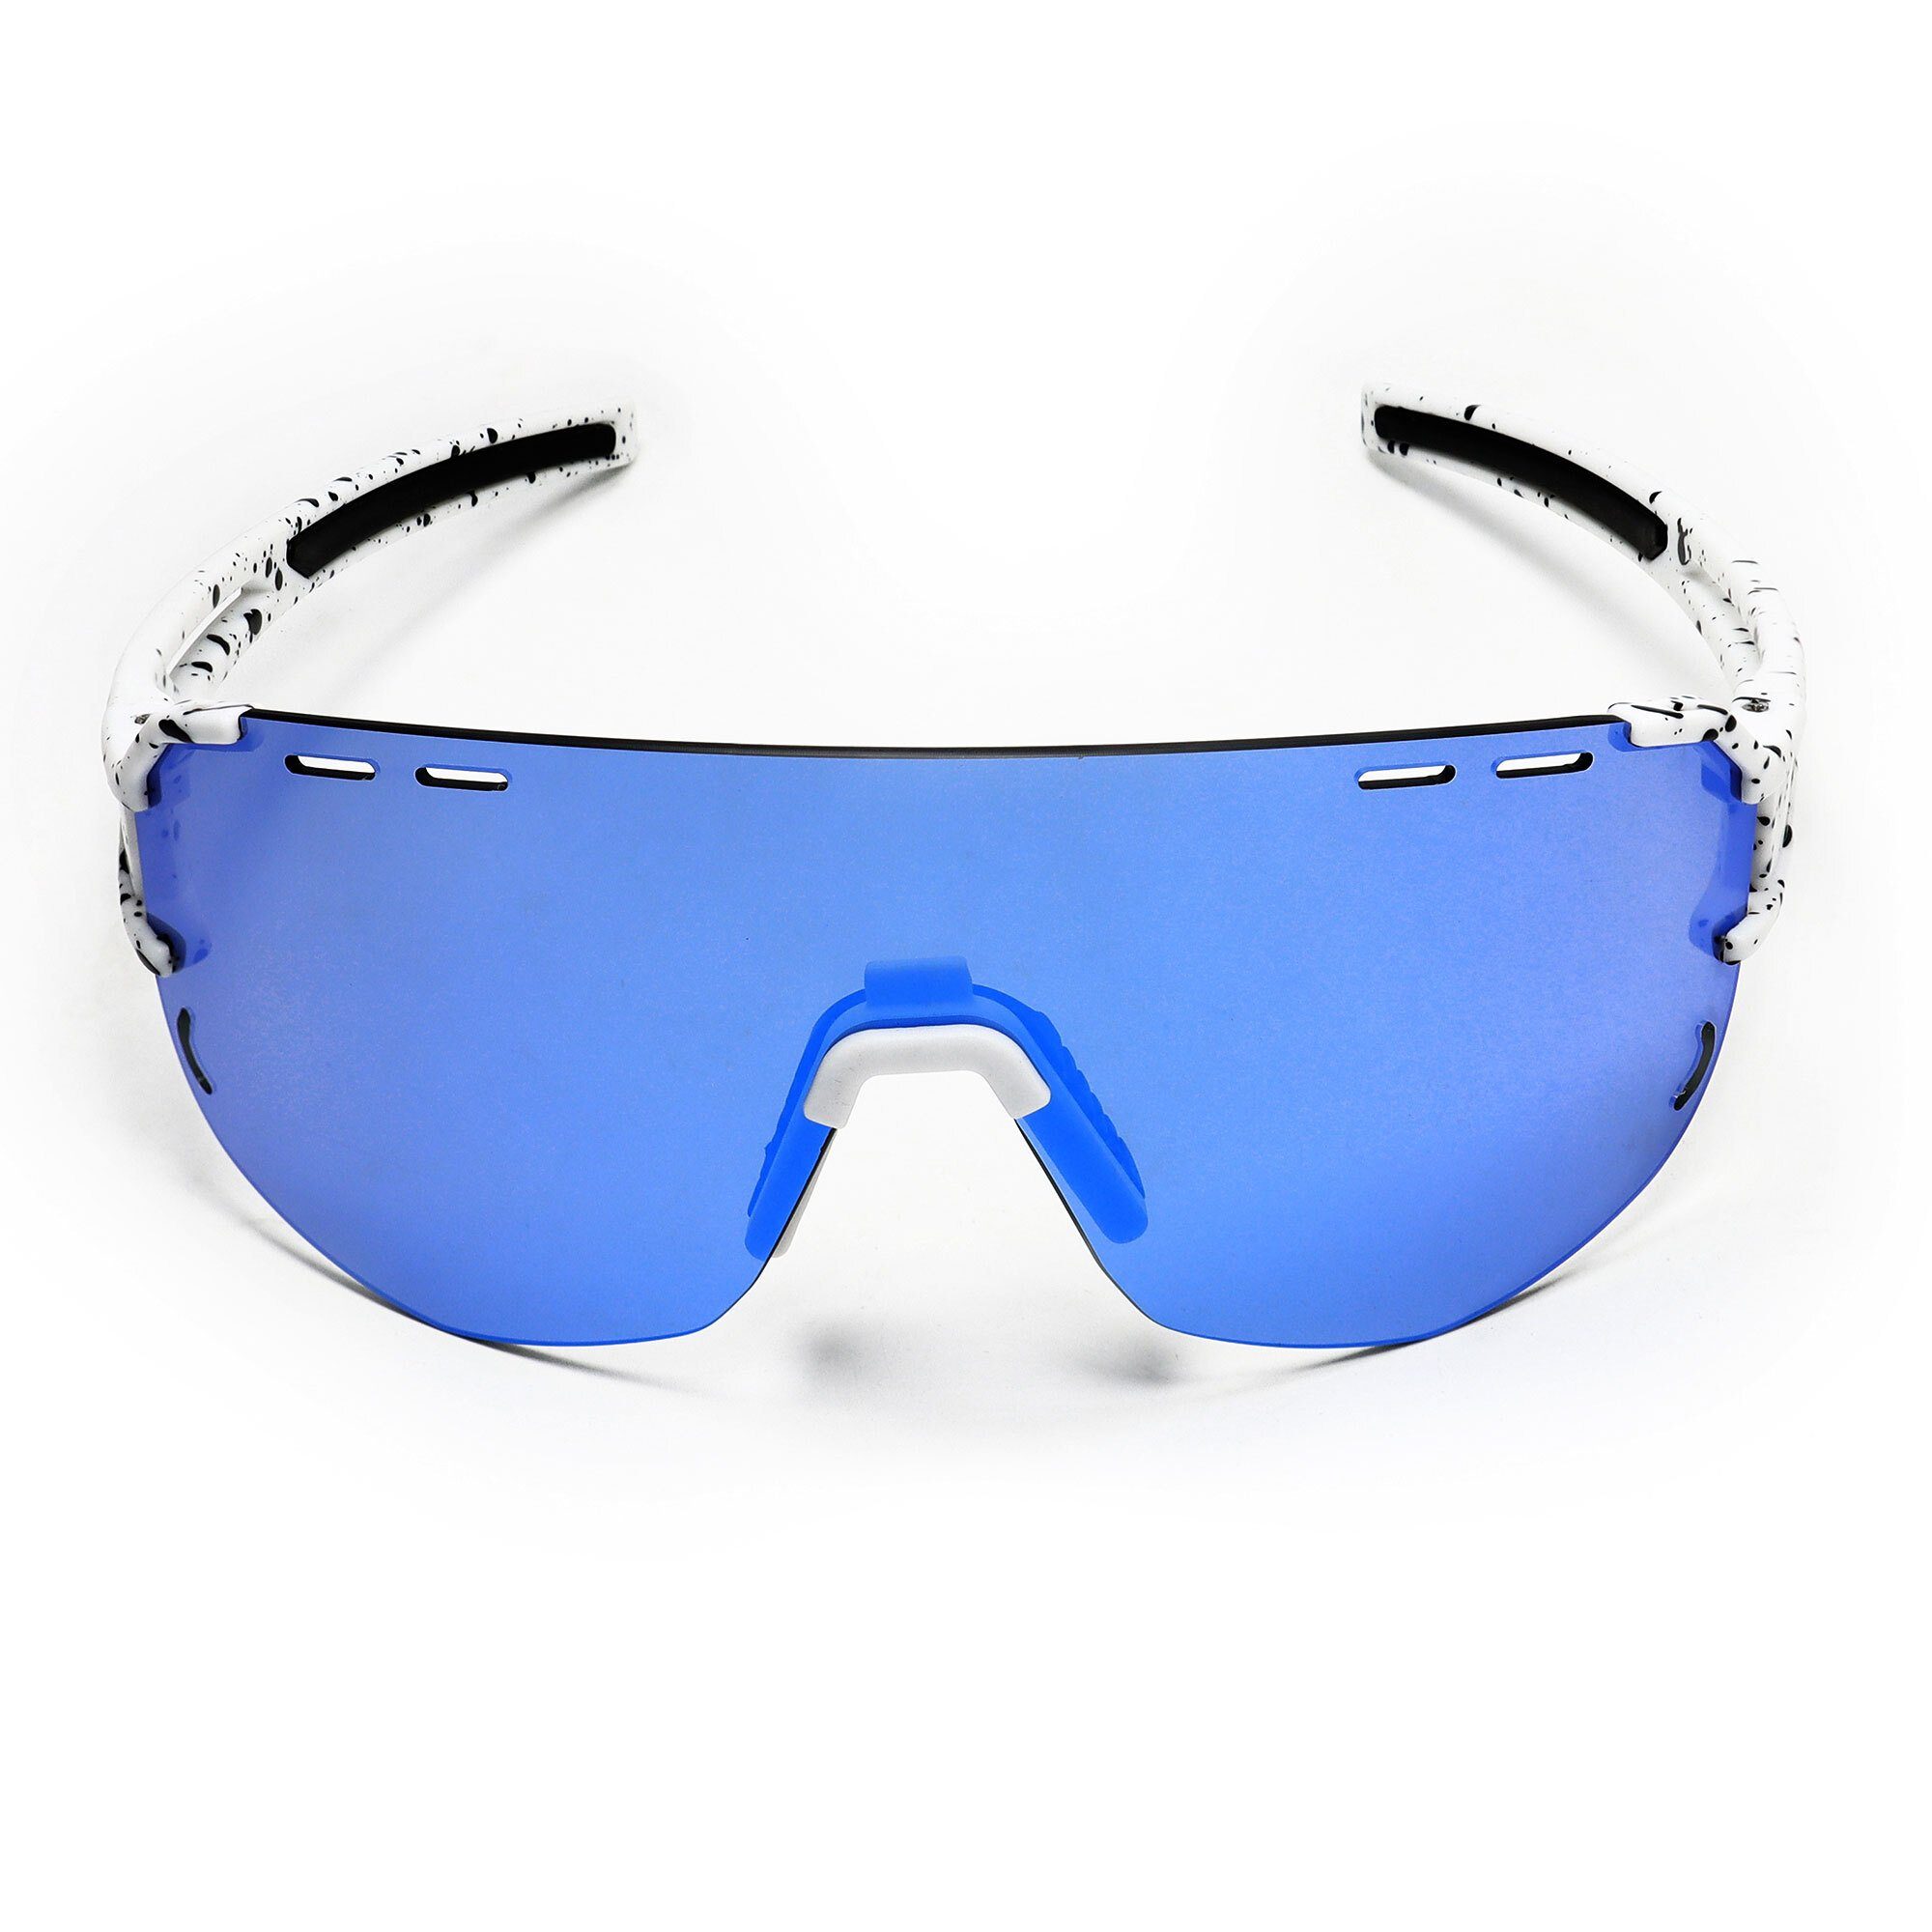 Sport-Sonnenbrille SUNGLOW / Sportbrille weiß/blau, blau sport-sonnenbrille YEAZ weiß